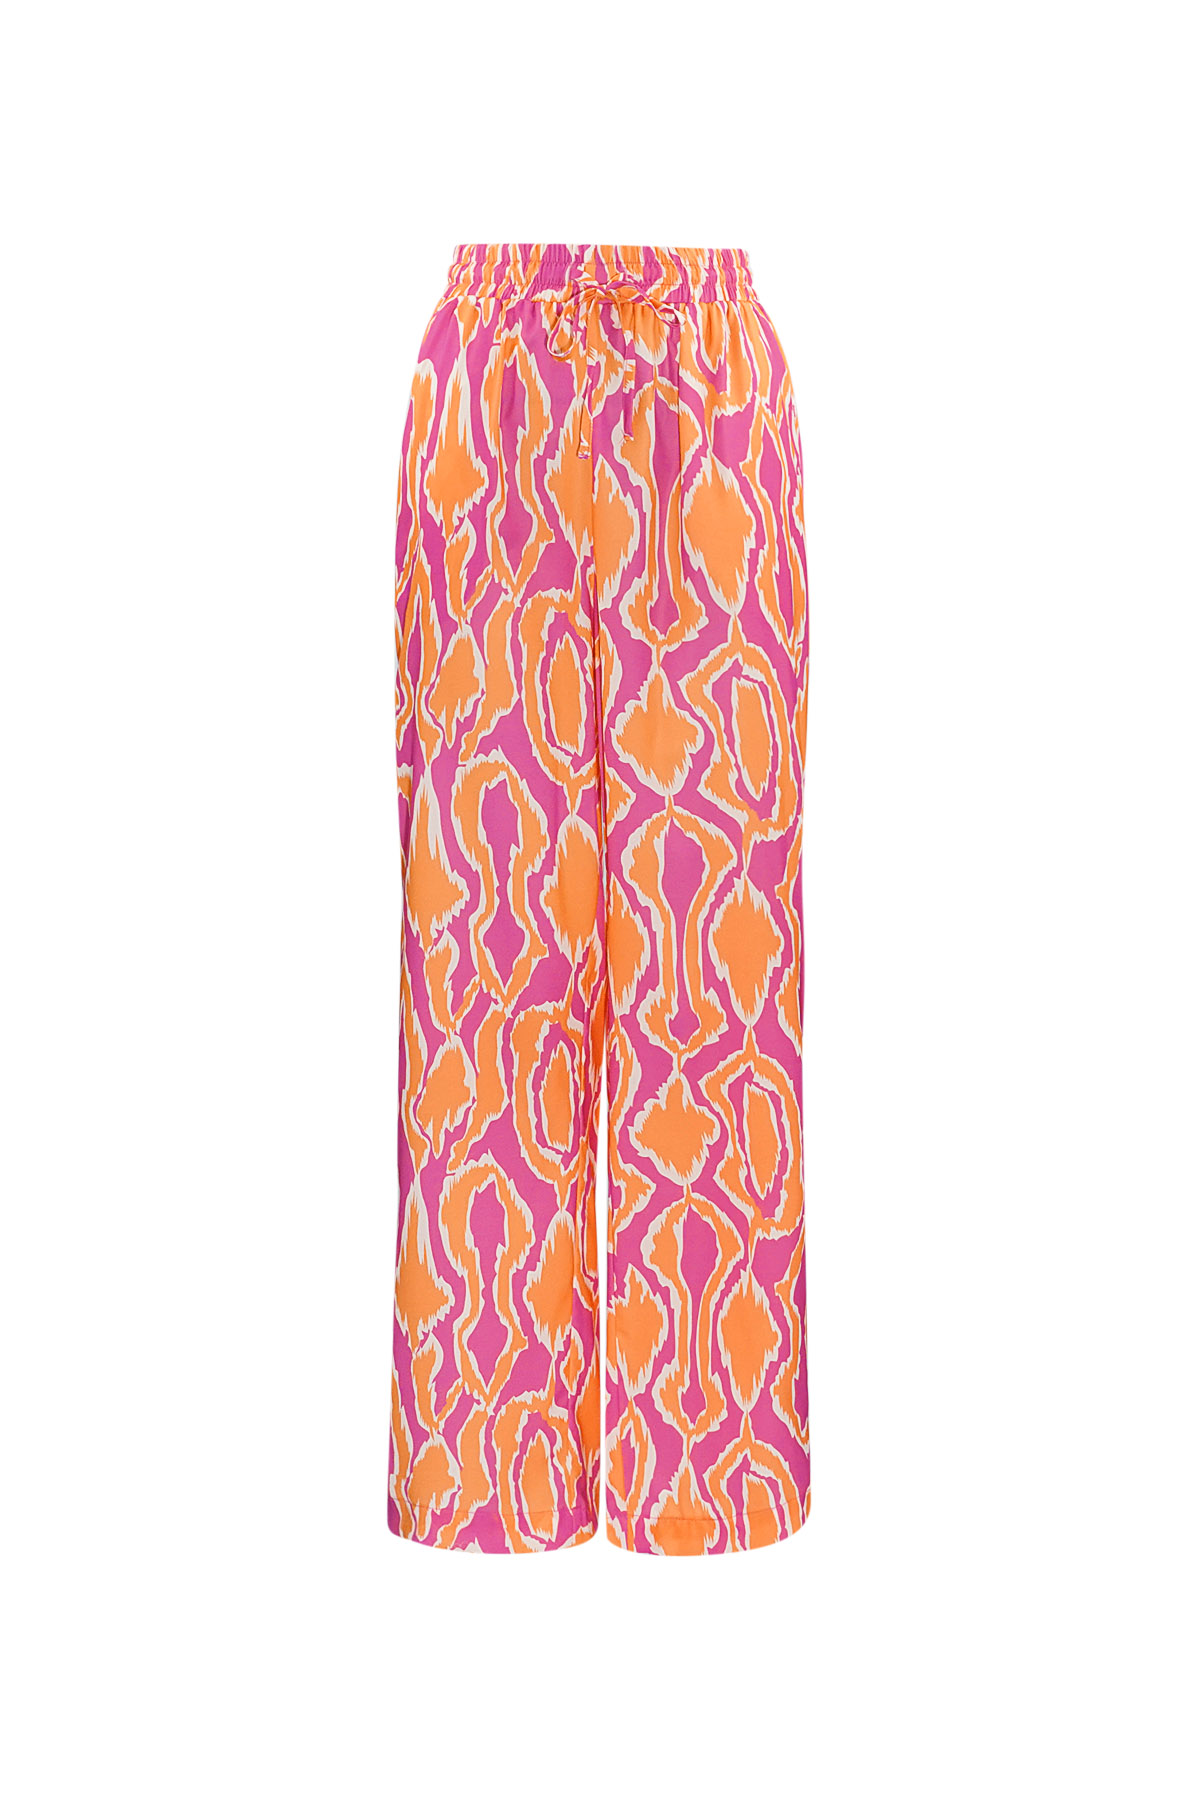 Pantalon coloré avec imprimé - orange/rose 